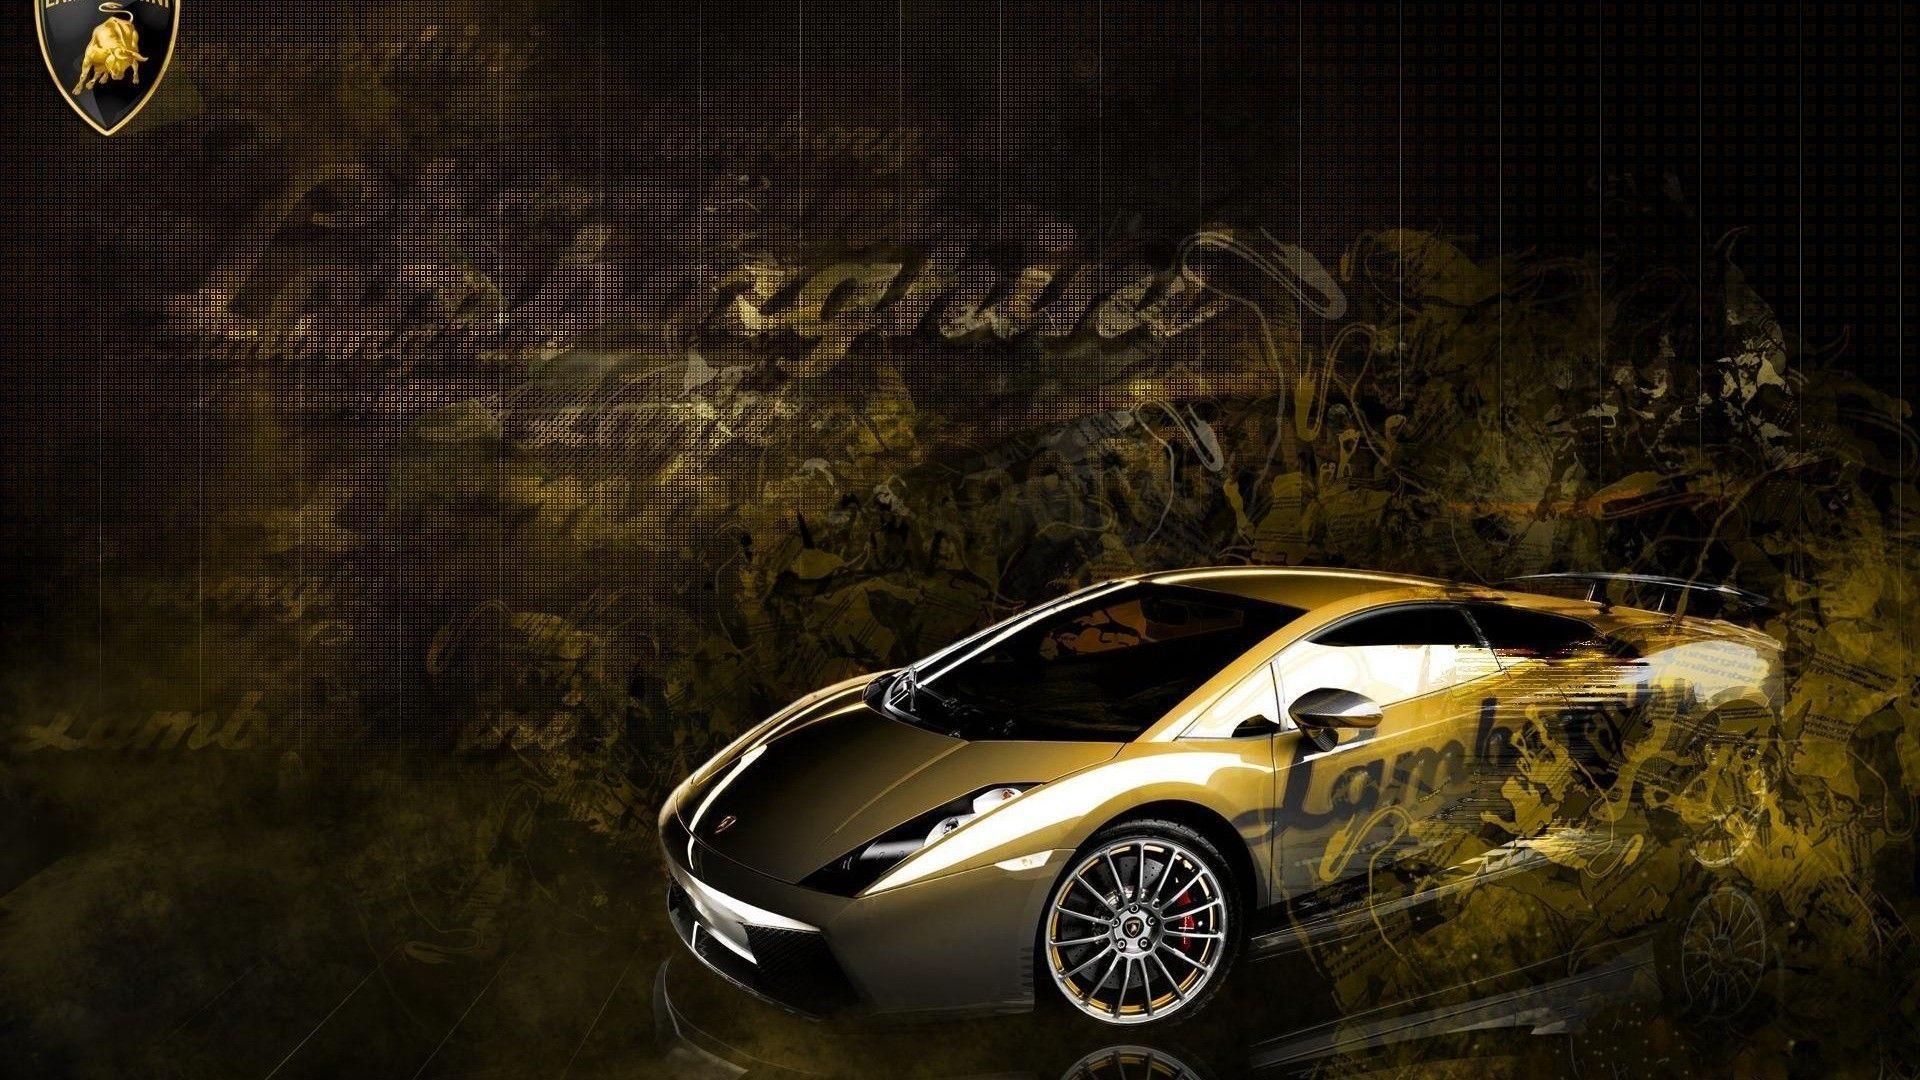 image For > Lamborghini Gallardo Wallpaper Desktop